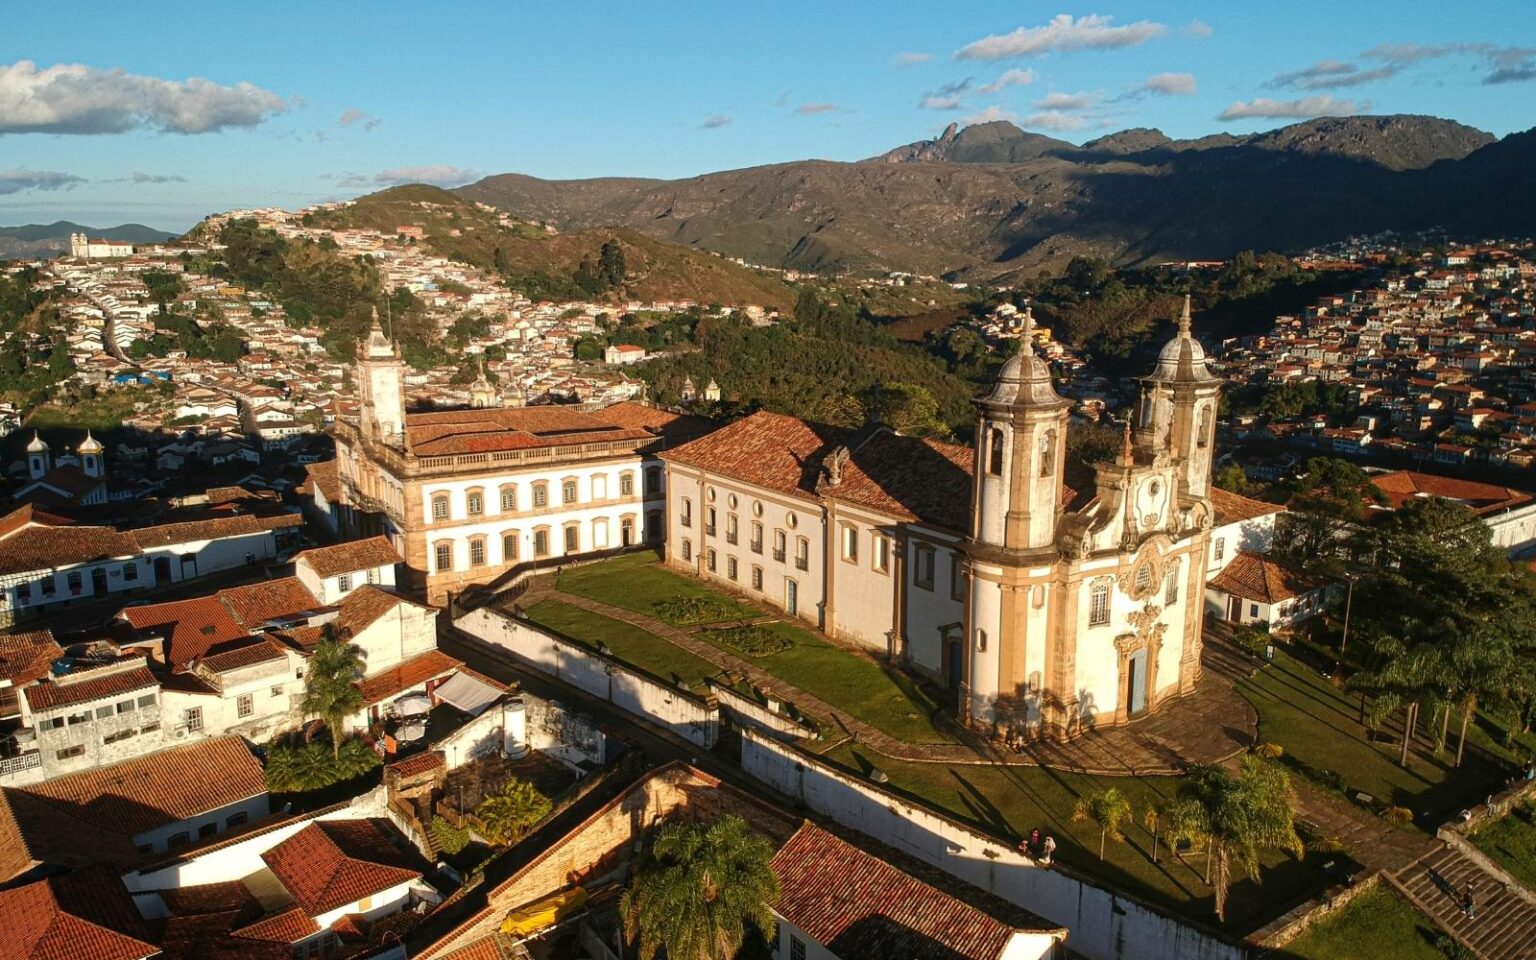 Choverá pouco em Mariana e Ouro Preto no último fim de semana de novembro, aponta previsão do tempo